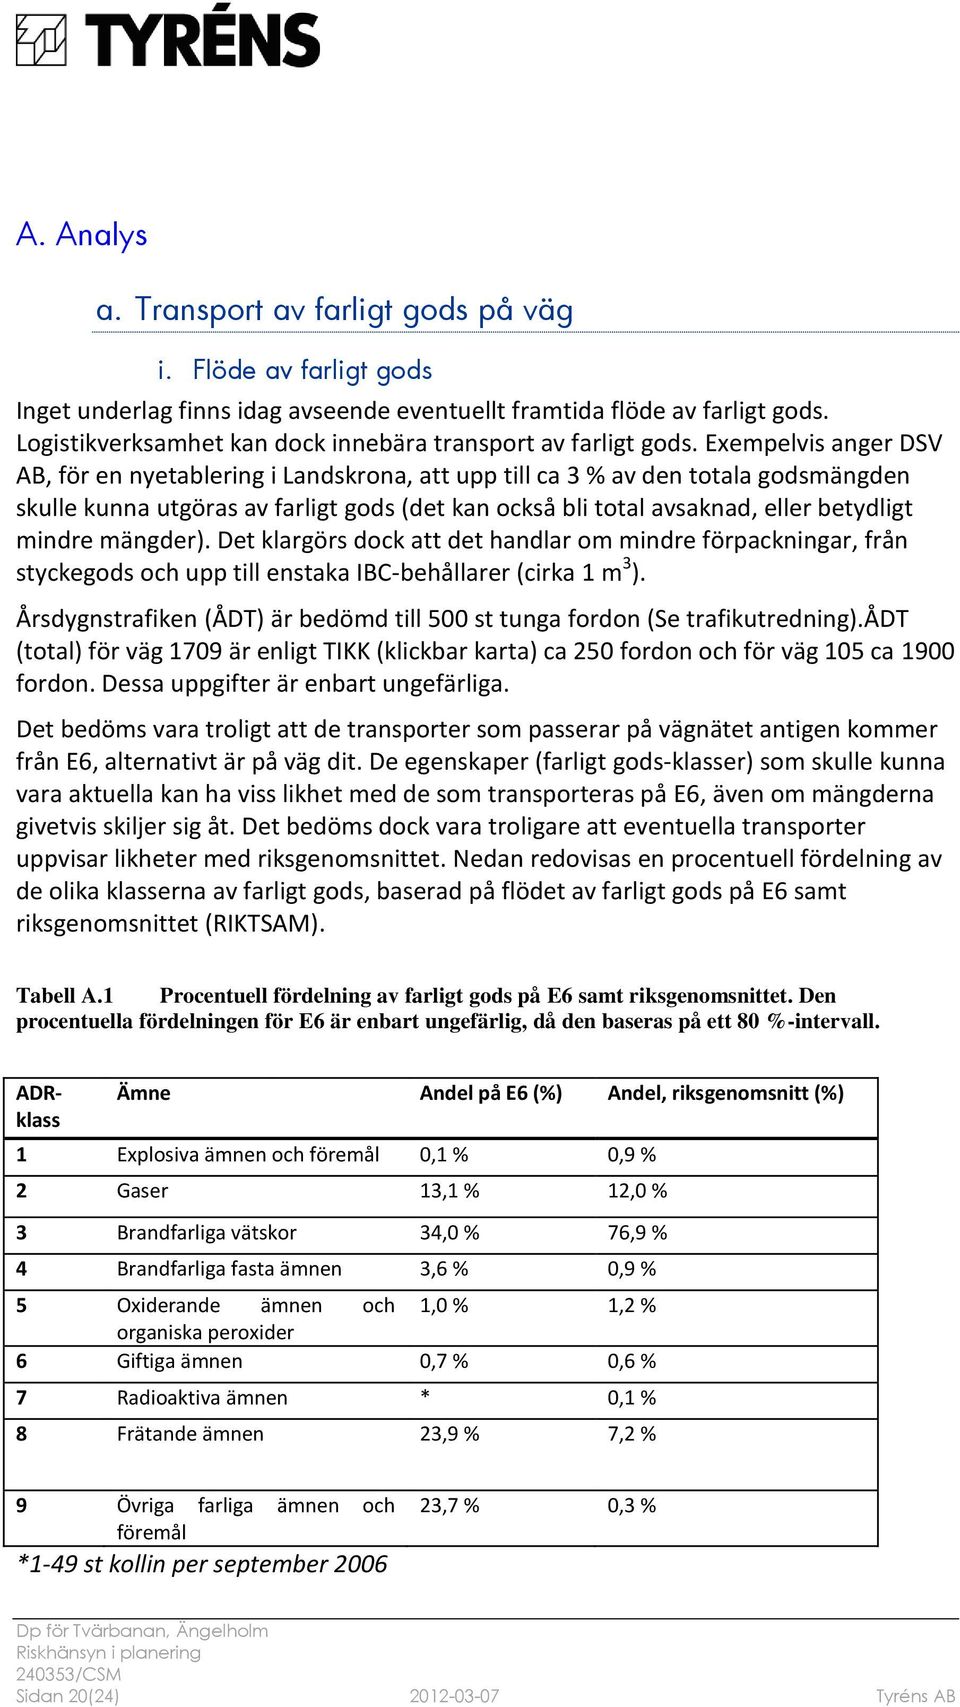 Exempelvis anger DSV AB, för en nyetablering i Landskrona, att upp till ca 3 % av den totala godsmängden skulle kunna utgöras av farligt gods (det kan också bli total avsaknad, eller betydligt mindre